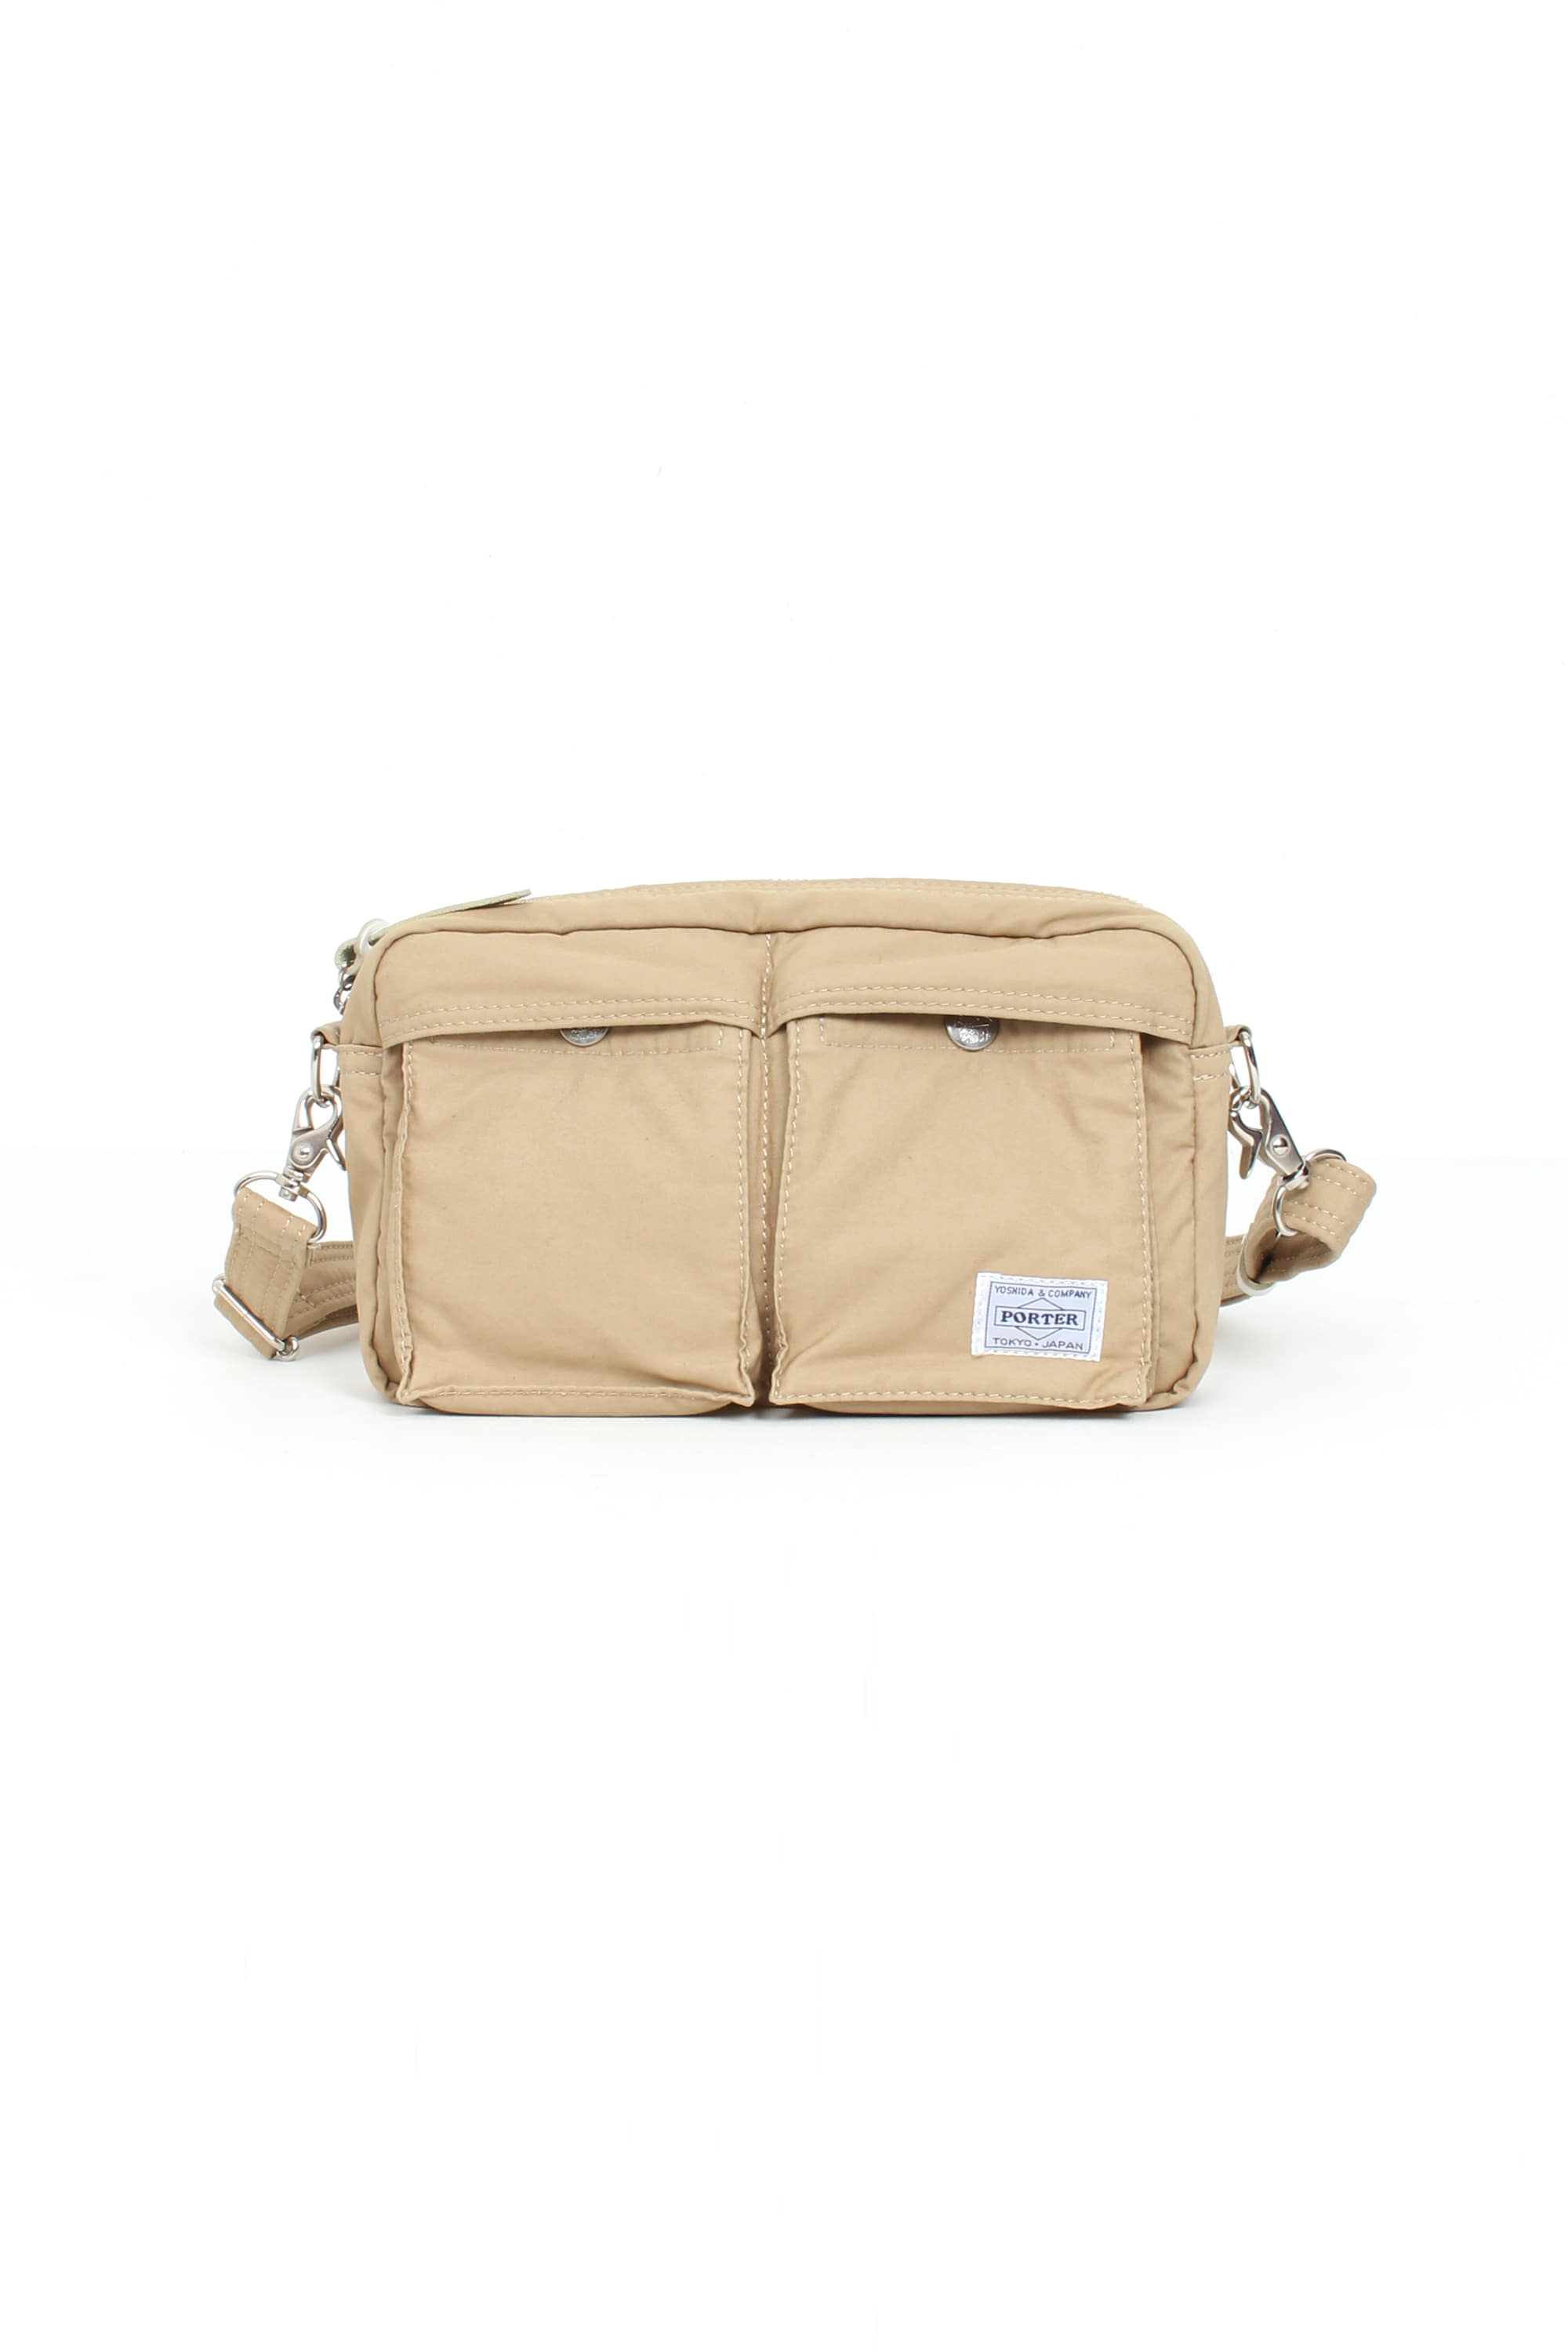 PORTER Shoulder Bag(24*12*5)